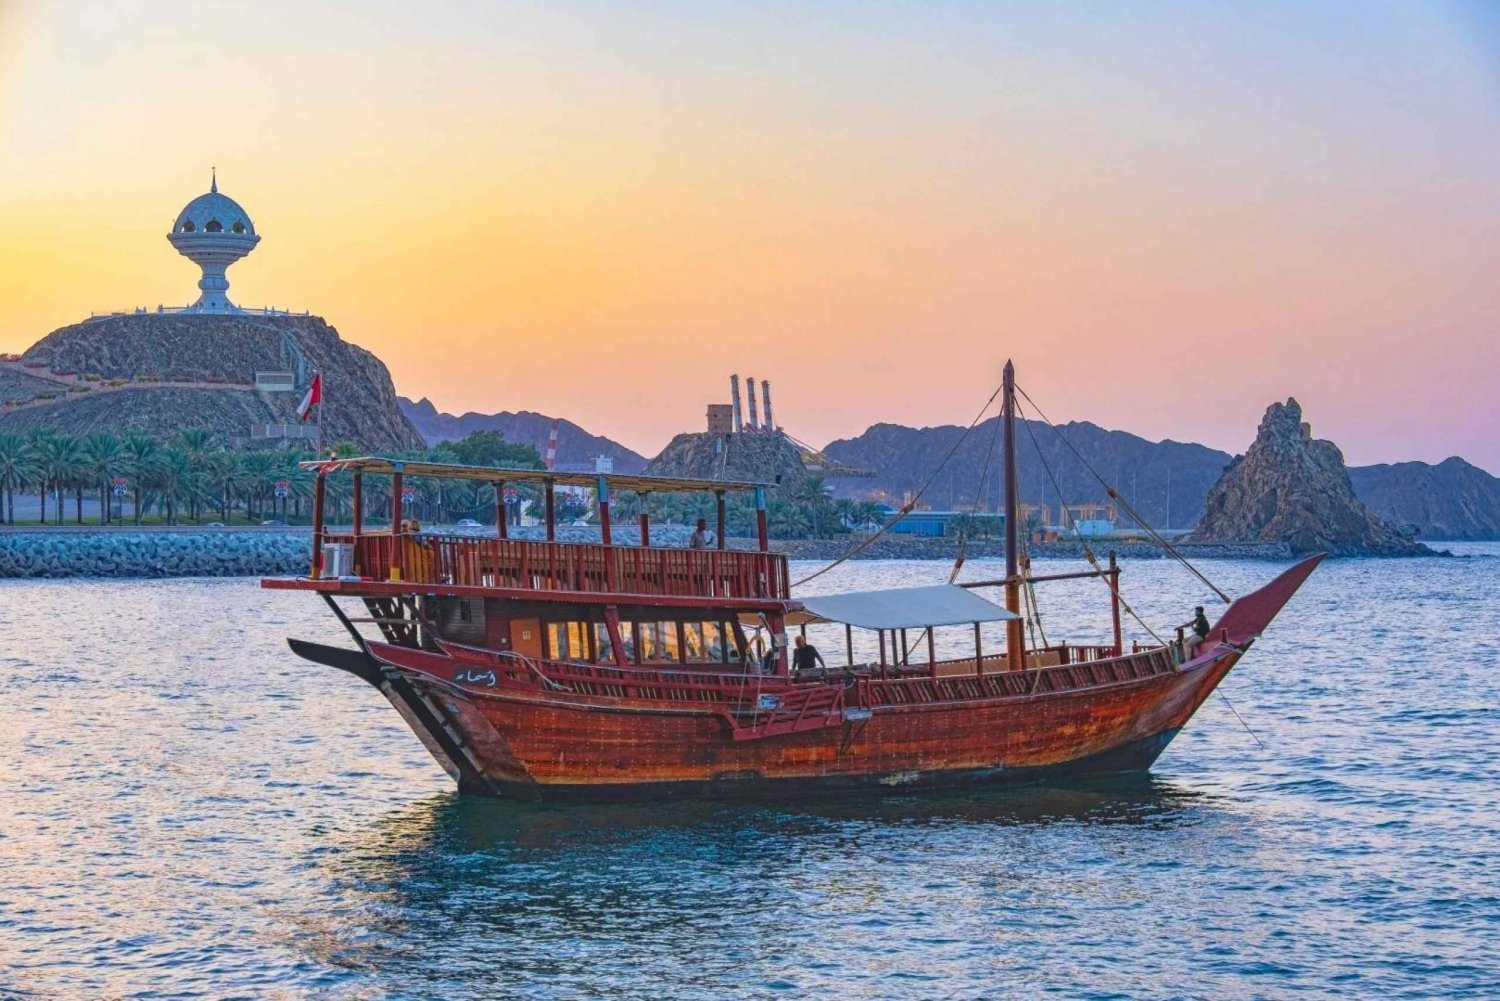 Muscat - Omanin dhow-risteily rannikolla ja auringonlasku (2 tuntia)